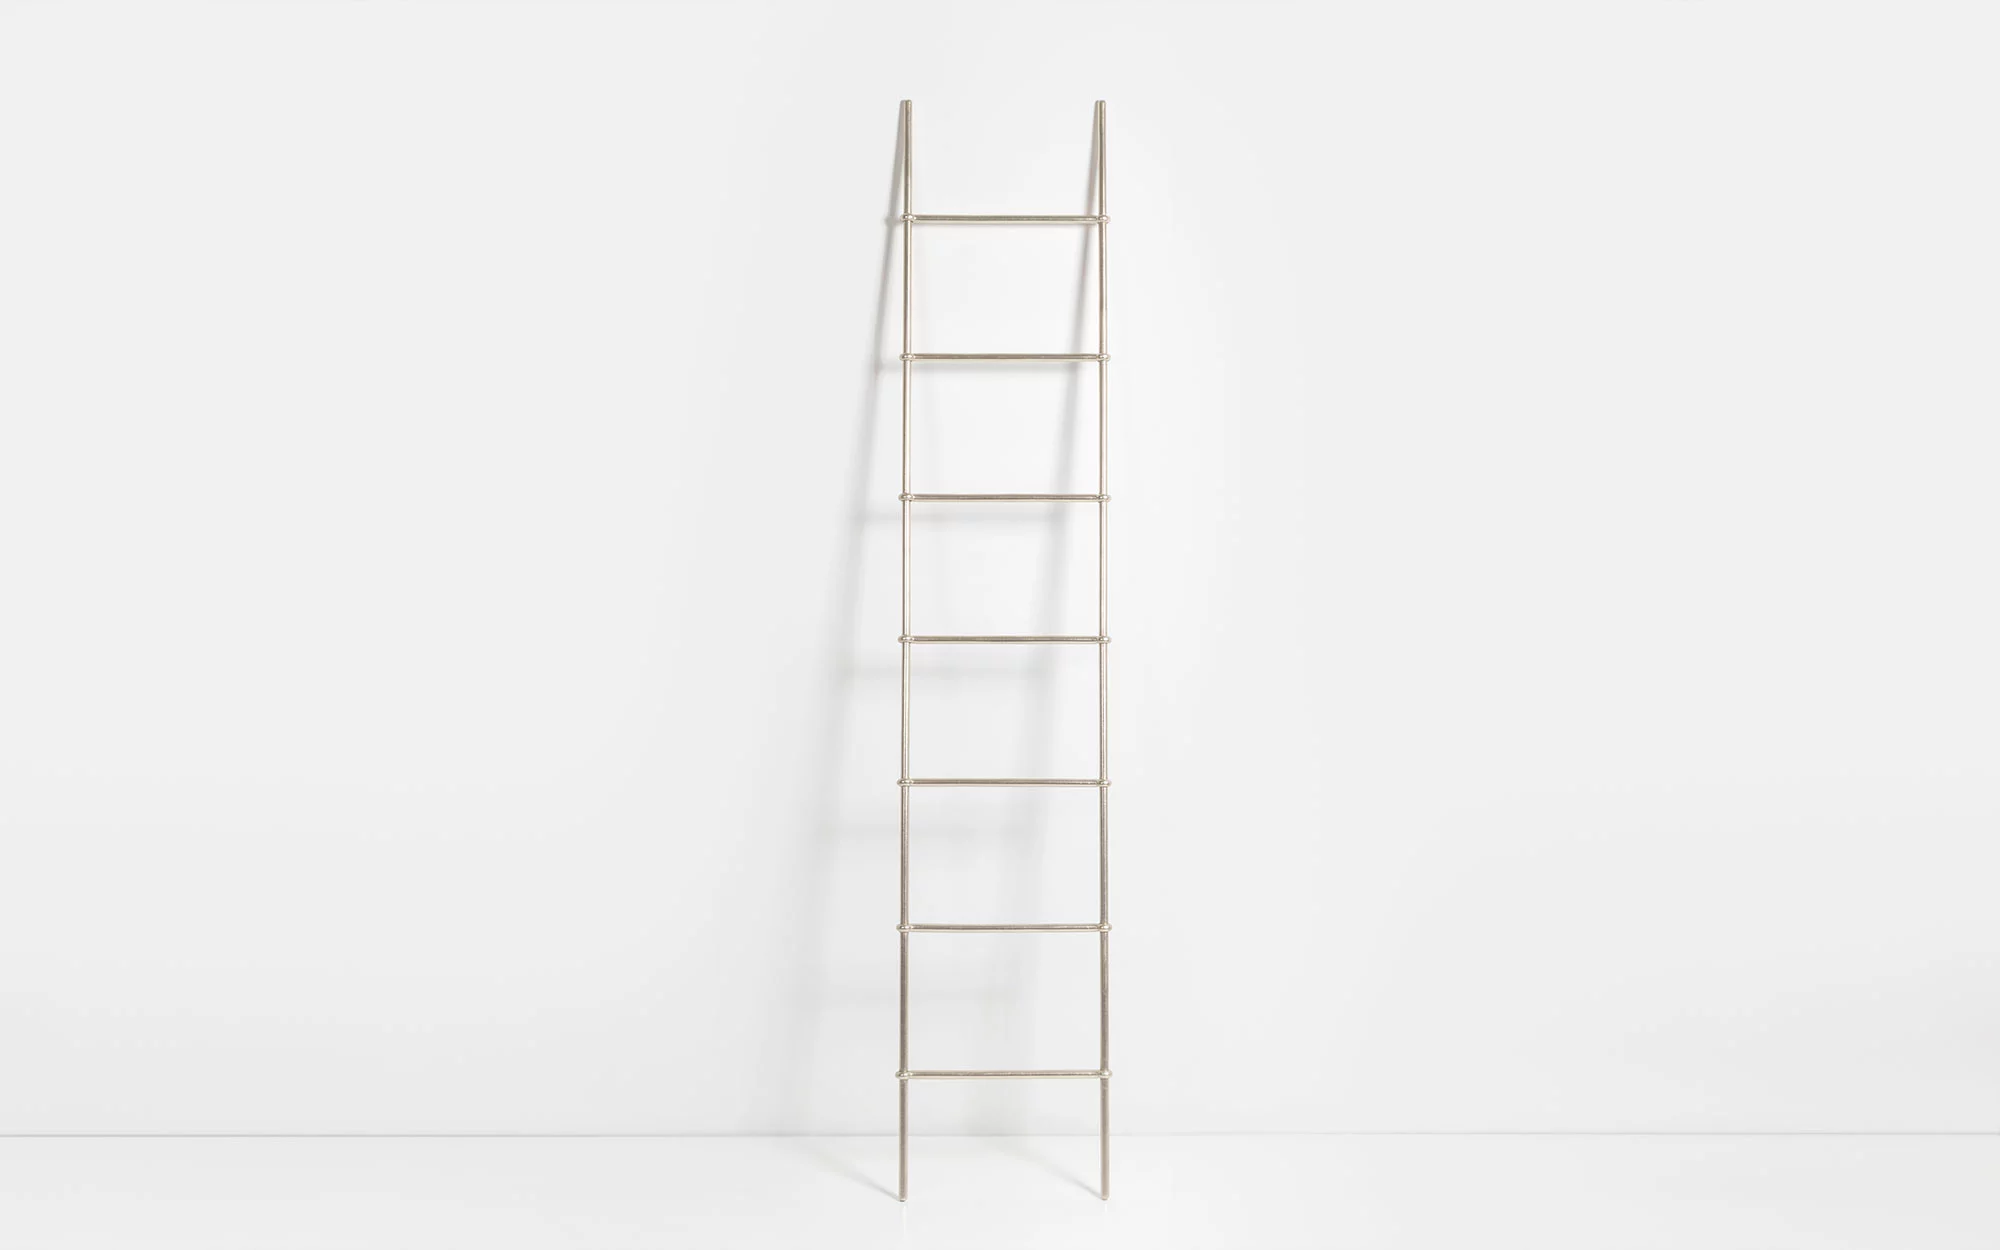 Ciel ladder - Ronan & Erwan Bouroullec - Console - Galerie kreo